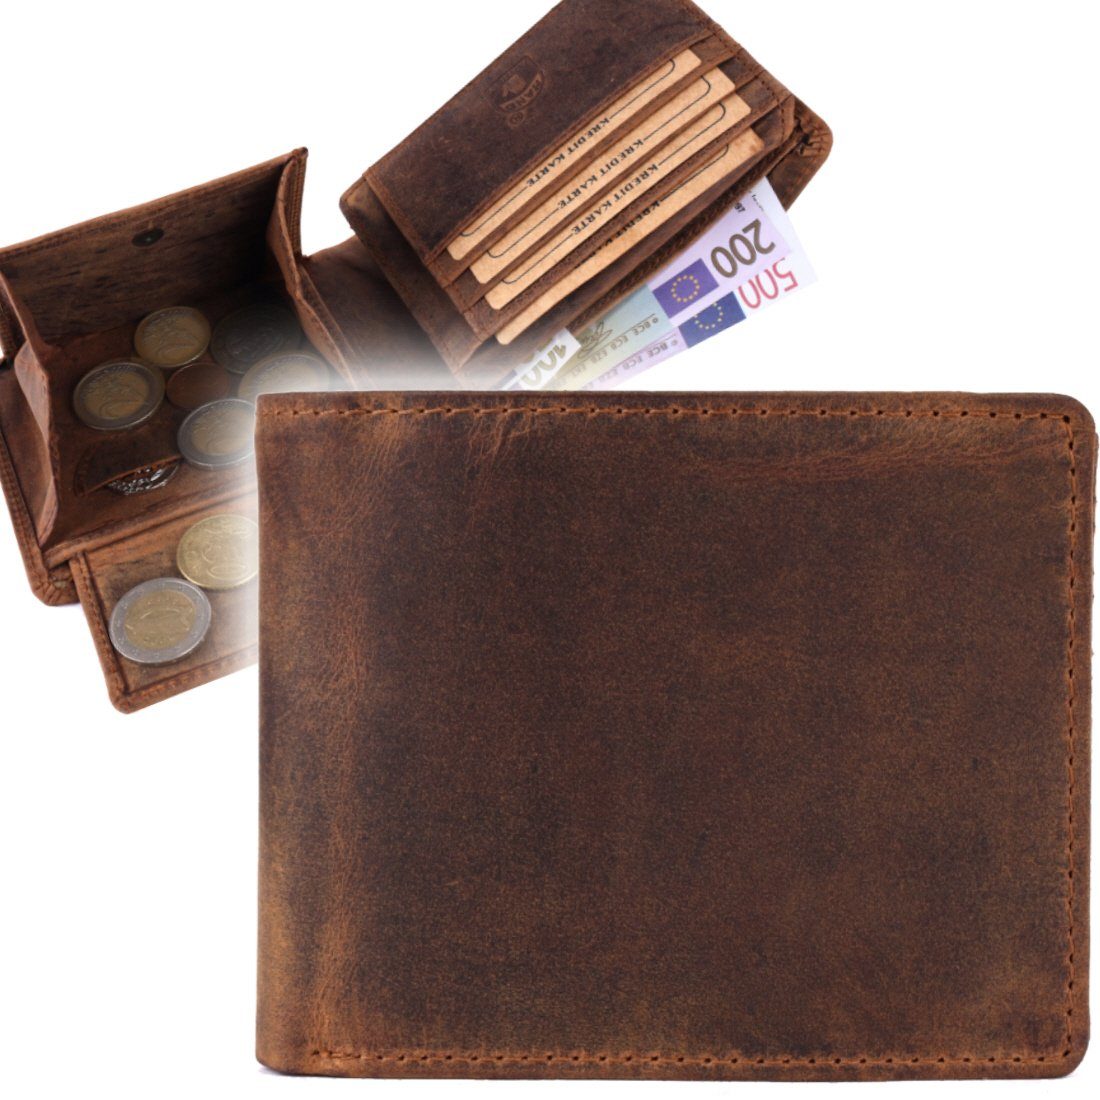 SHG mit Schutz Münzfach Leder Lederbörse Portemonnaie, Börse Männerbörse Herren Brieftasche Geldbörse RFID Büffelleder